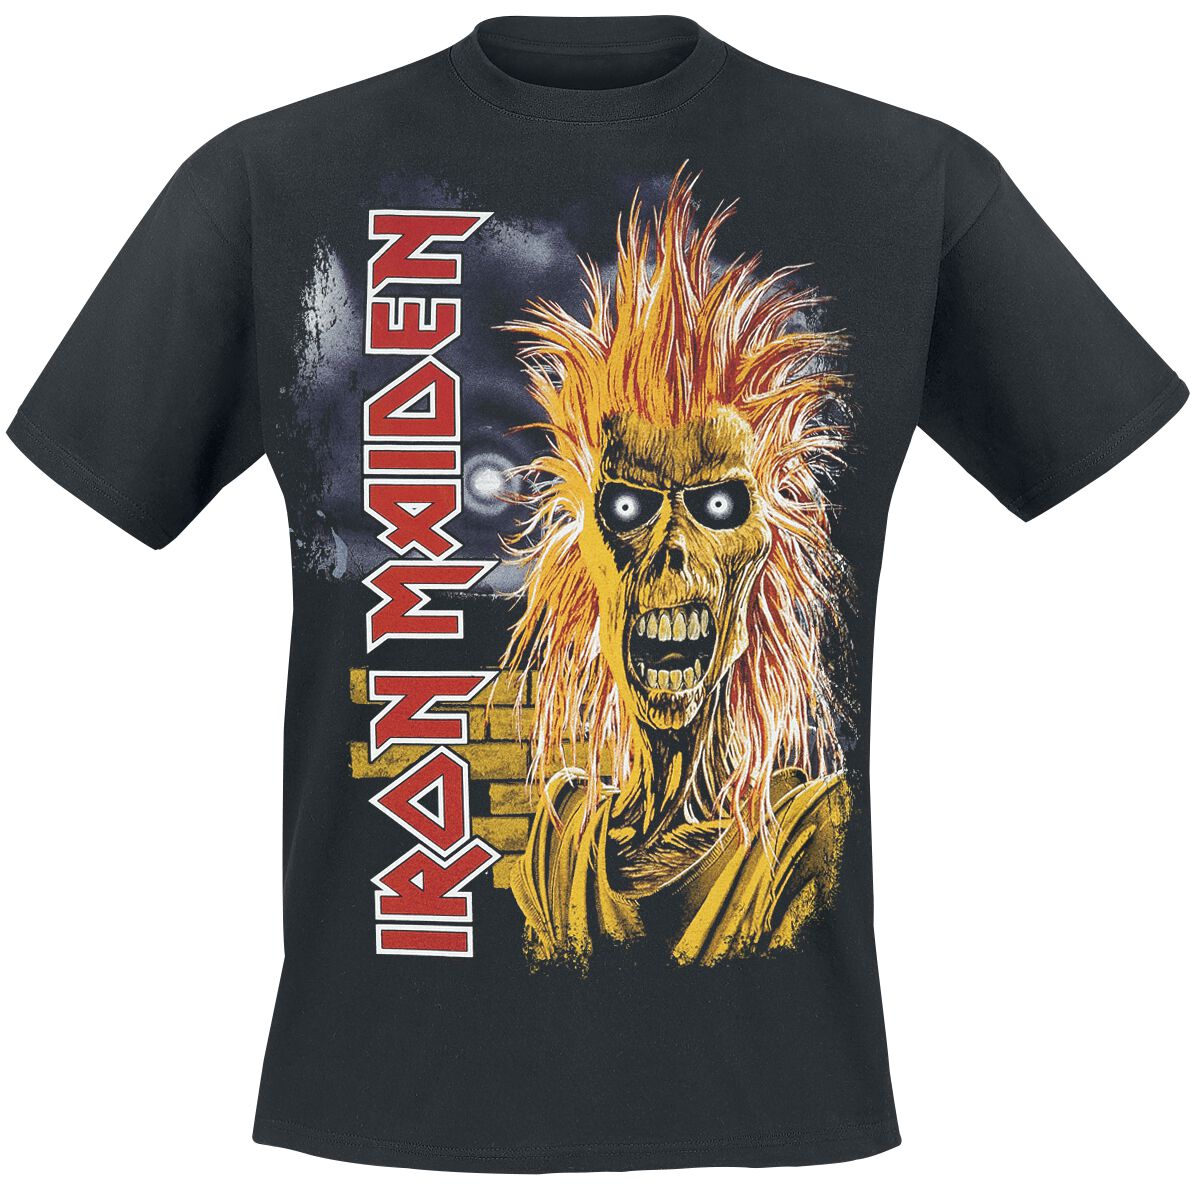 Image of Iron Maiden 1st Album Tracklist T-Shirt schwarz